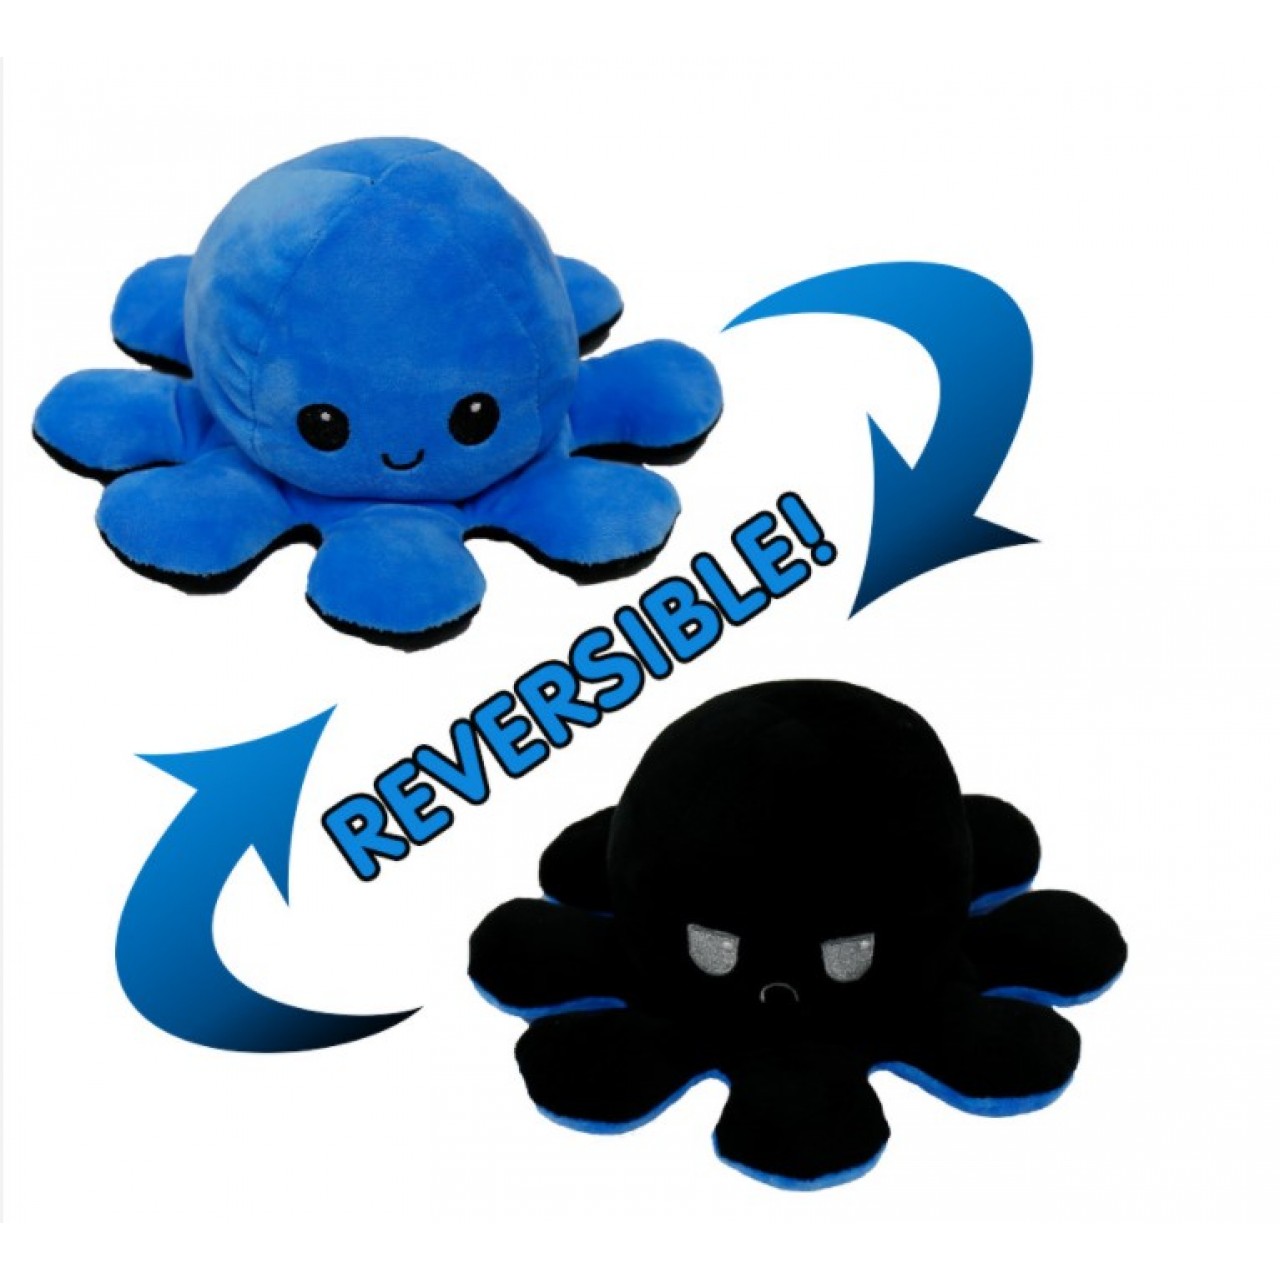 Χταπόδι διπλής όψης λούτρινο emotional reversible octopus plush 12 εκ - 5241 - Μπλε / Μαύρο